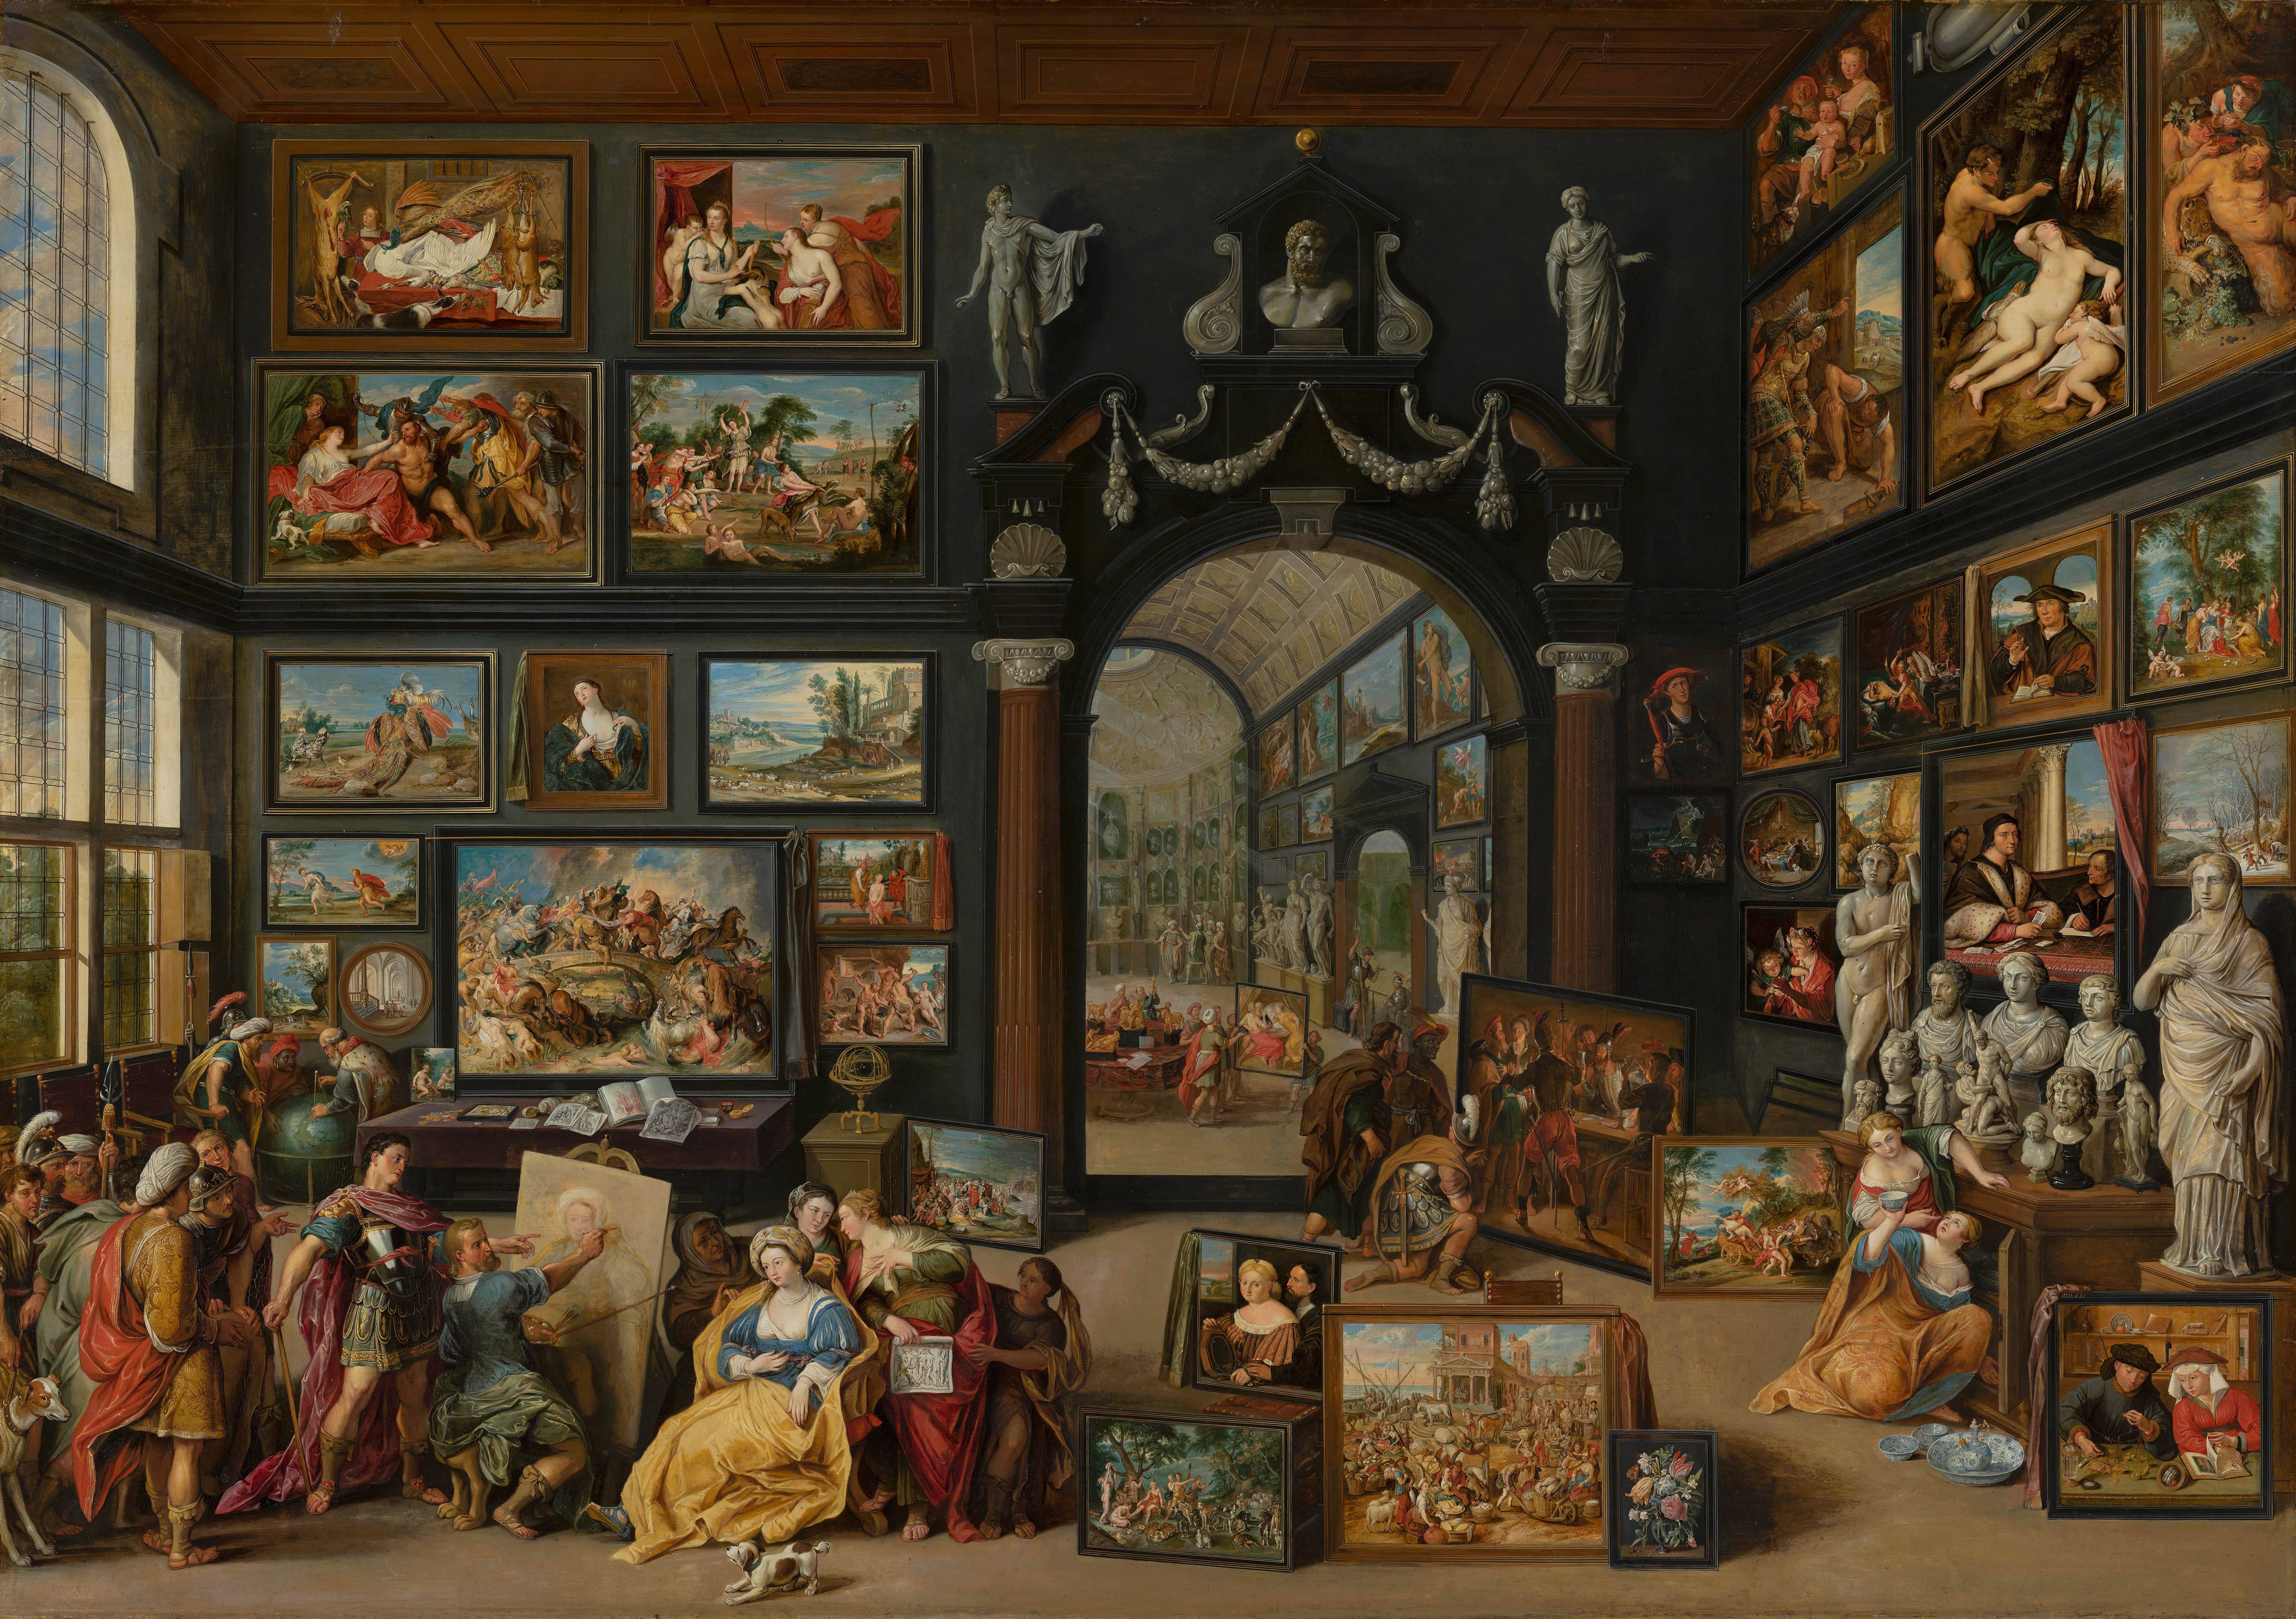 Apelles schildert Campaspe by Willem van Haecht - Circa 1630 - 104,9 x 148,7 cm Mauritshuis